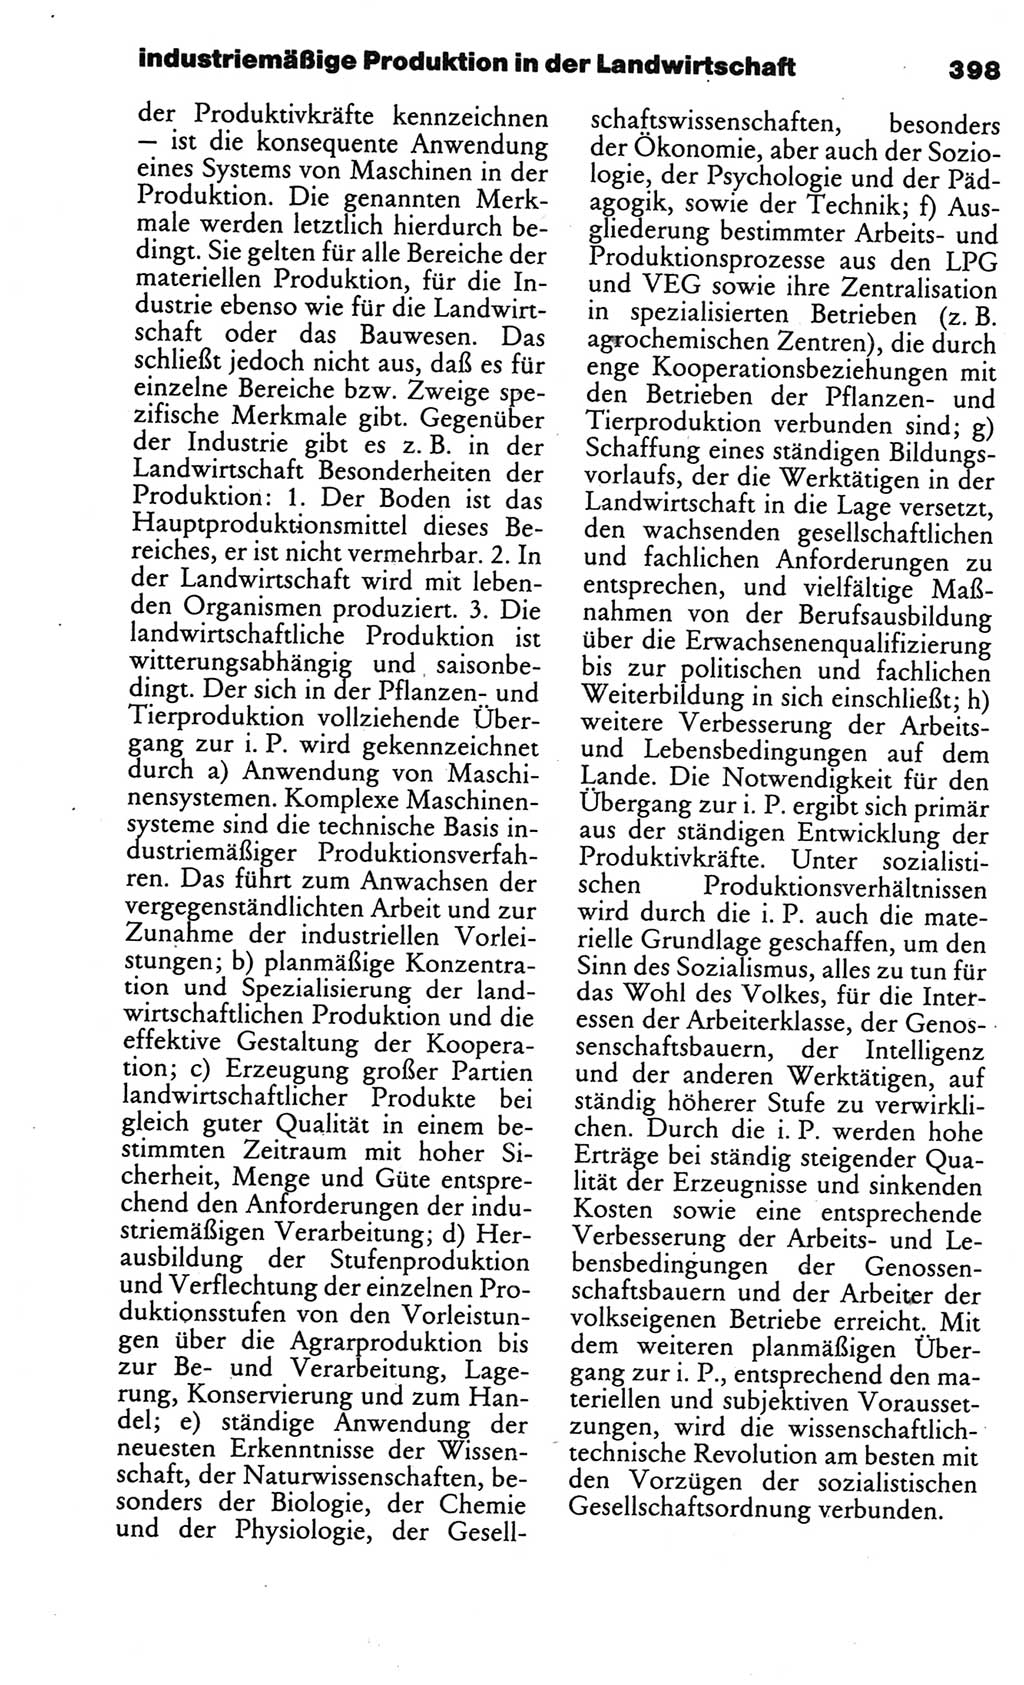 Kleines politisches Wörterbuch [Deutsche Demokratische Republik (DDR)] 1986, Seite 398 (Kl. pol. Wb. DDR 1986, S. 398)